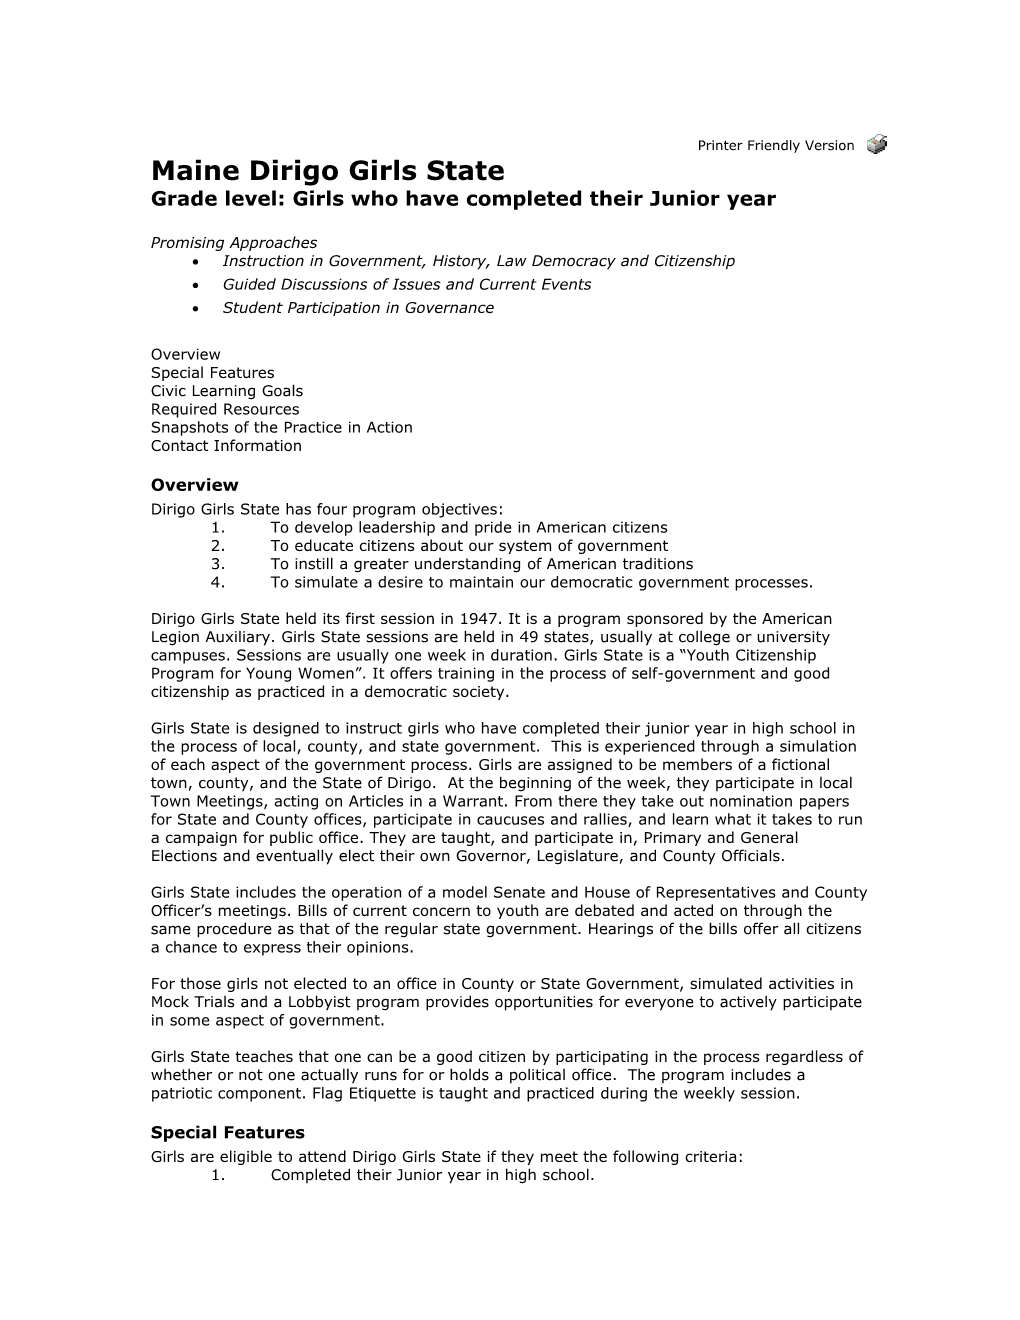 Maine Dirigo Girls State